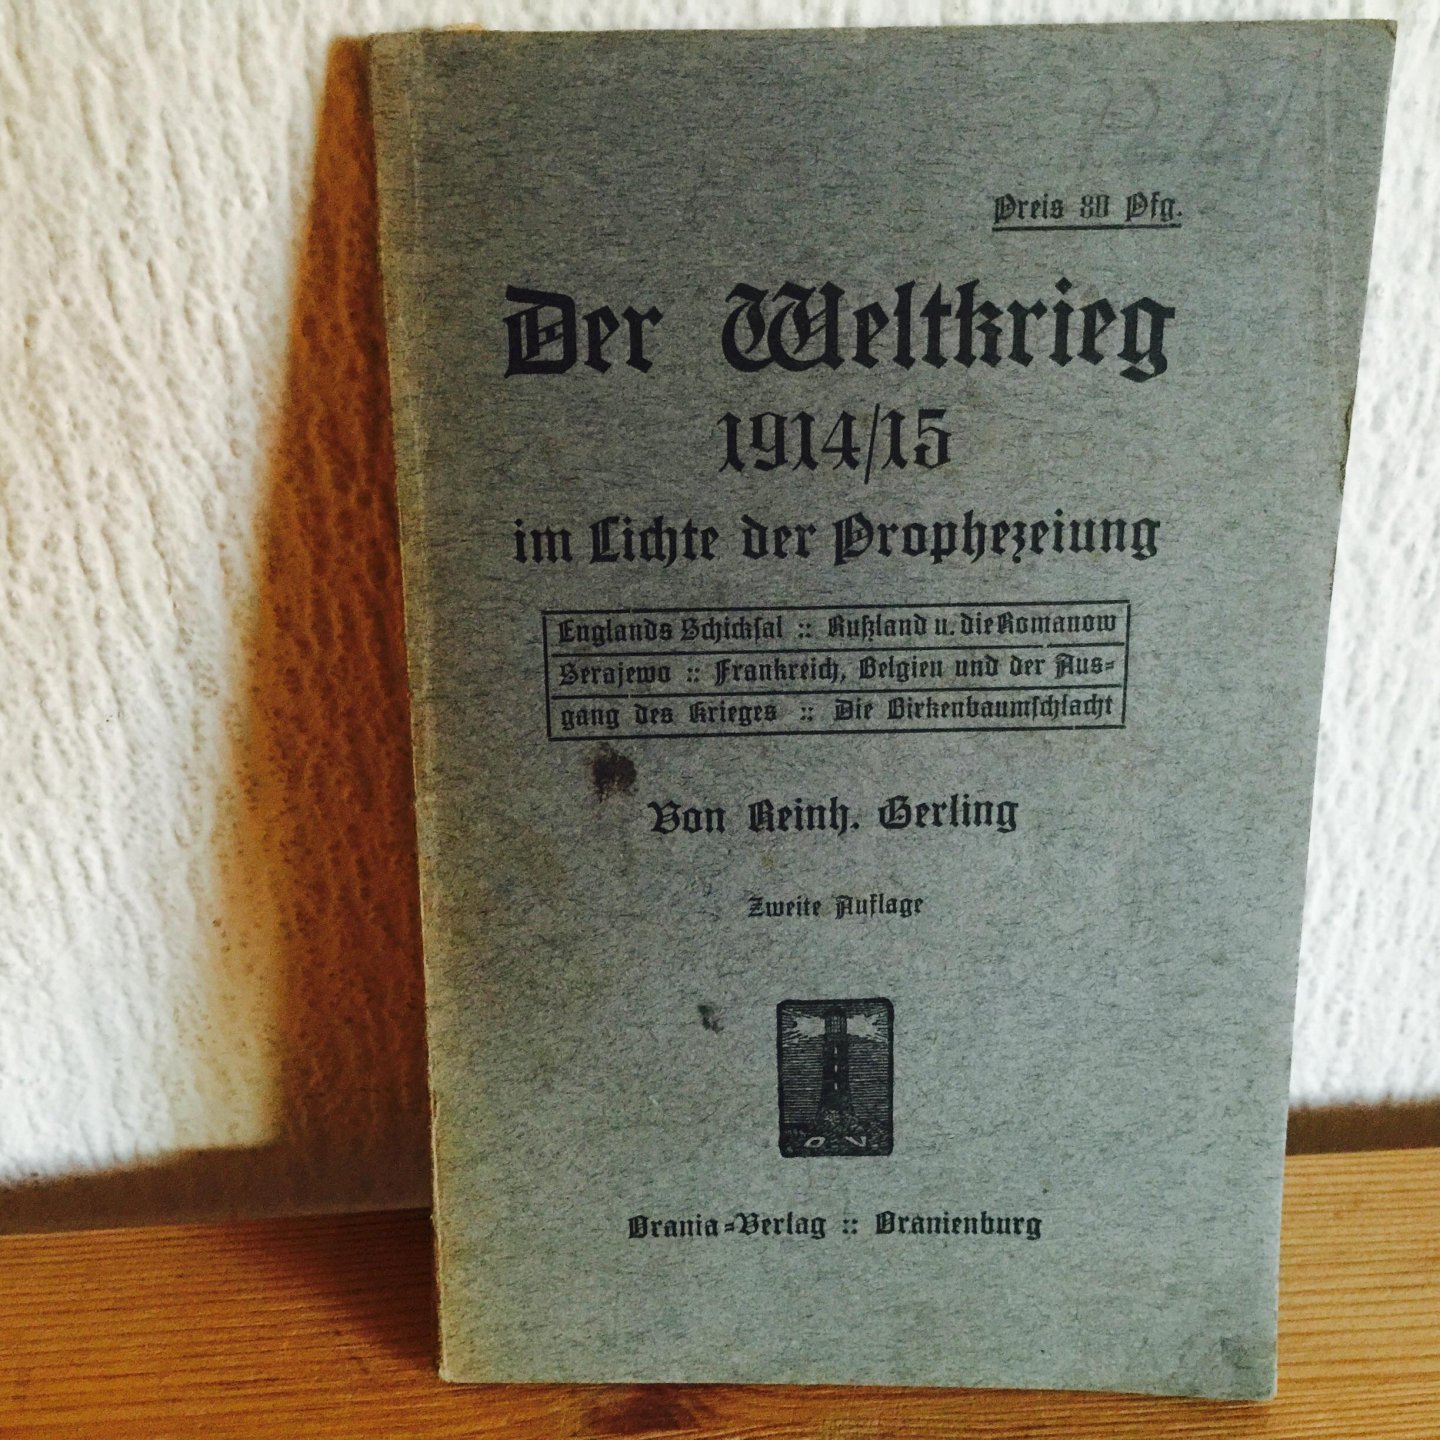 Terling - DER WELTKRIEG 1914/15 im lichte der Prophezeiung